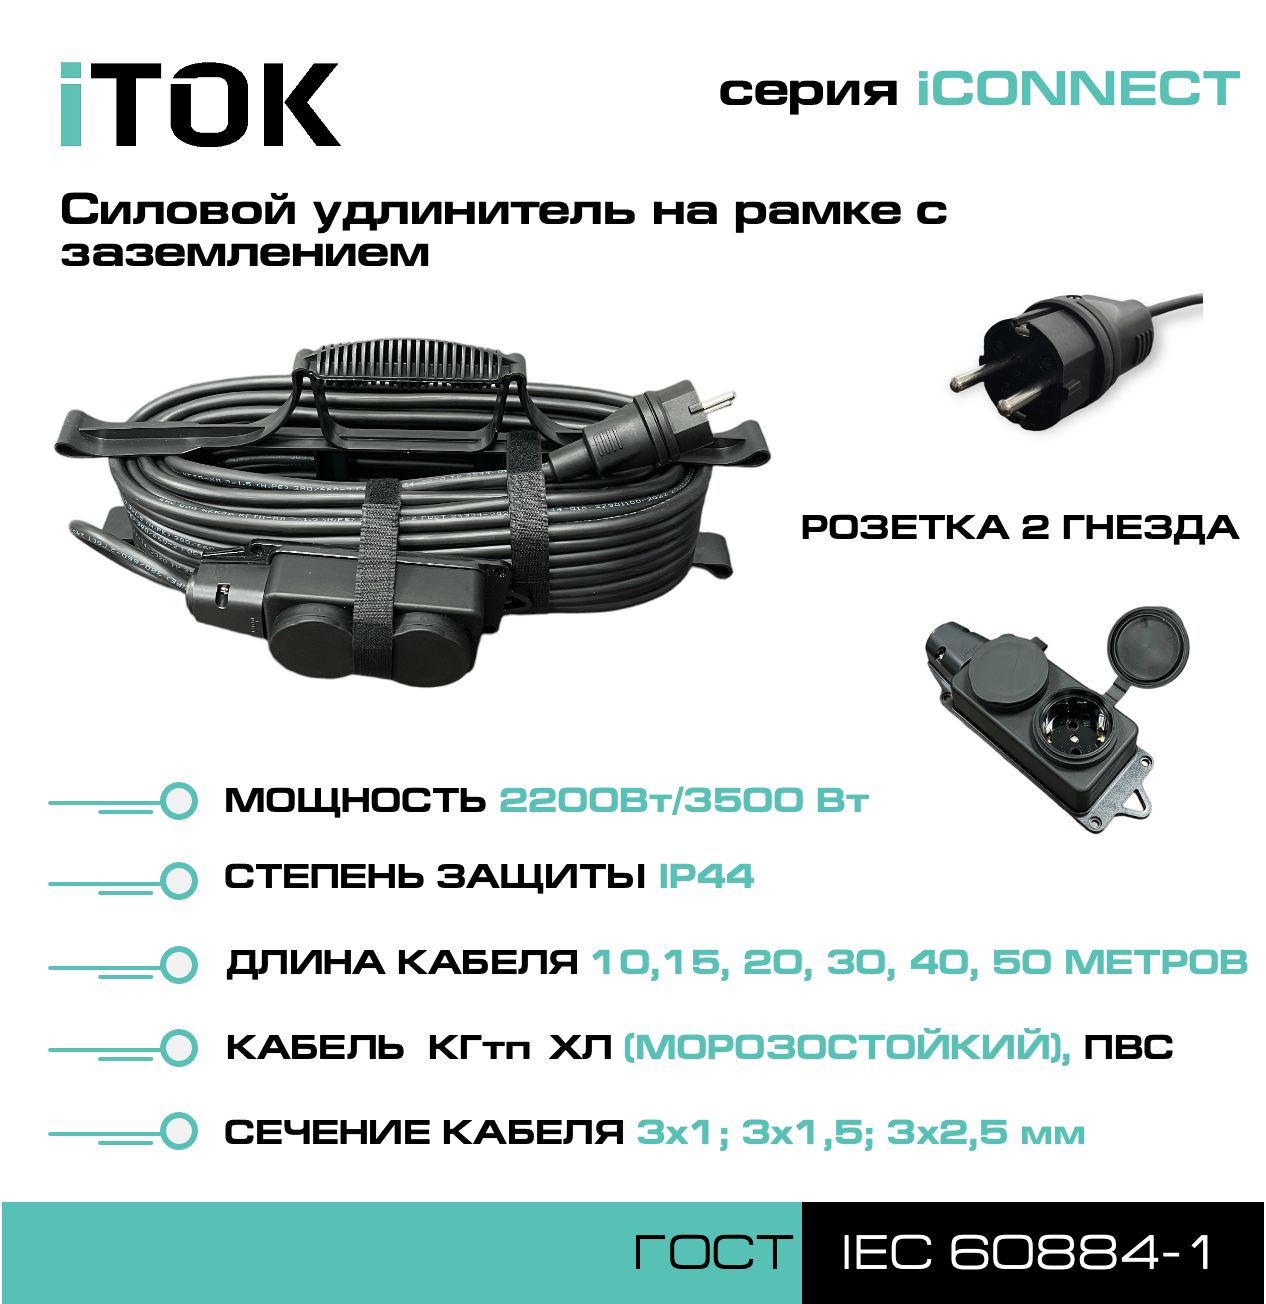 Удлинитель на рамке с заземлением серии iTOK iCONNECT ПВС 3х1,5 мм 2 гнезда IP44 15 м метчики для ремонта резьбы гнезда датчика кислорода ae